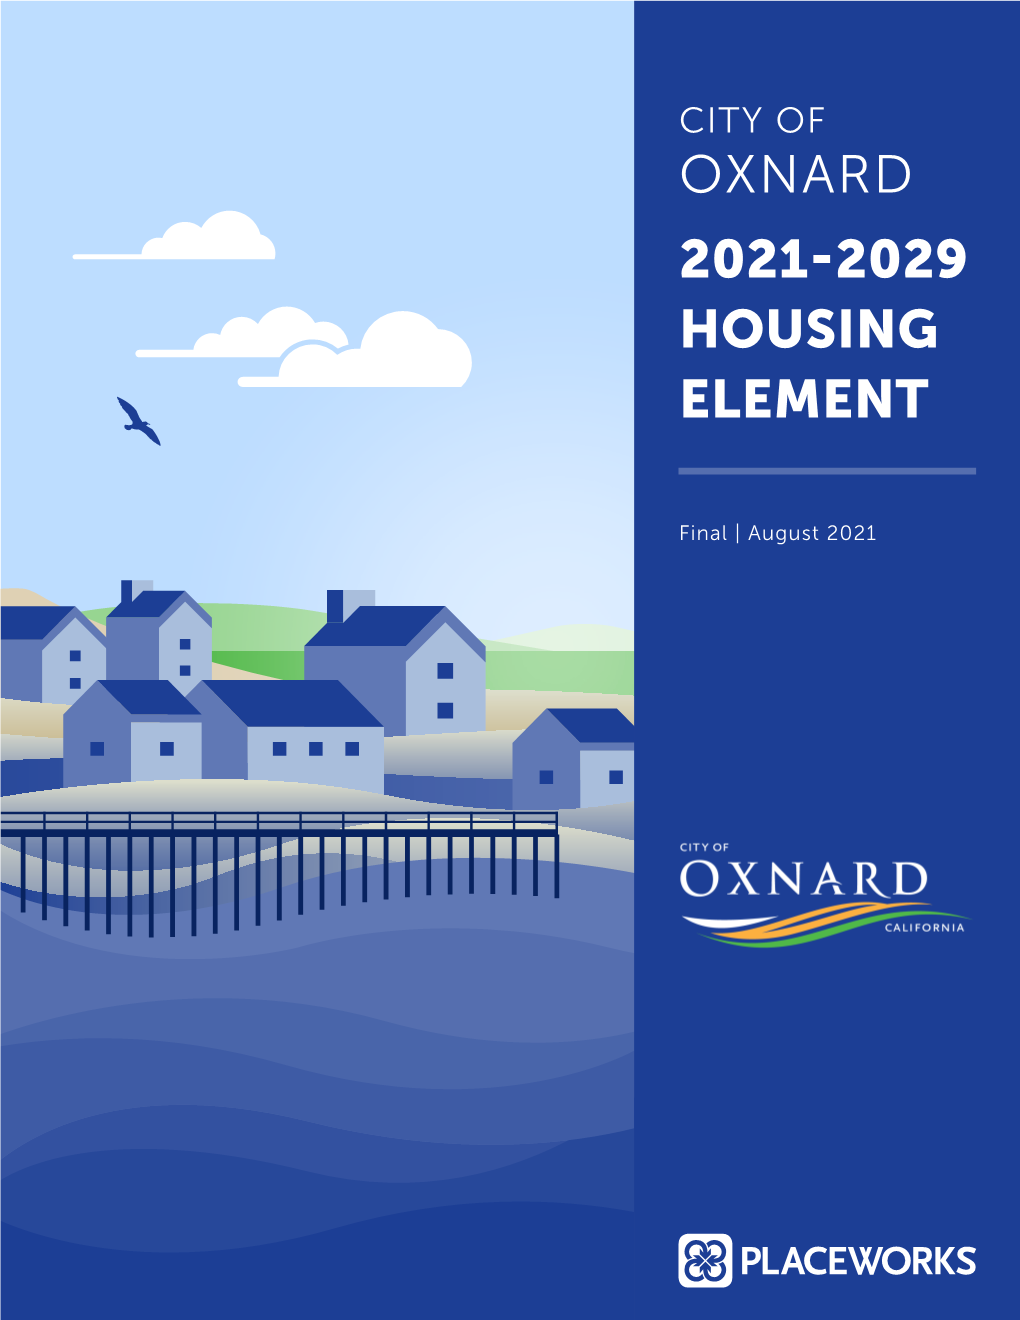 Oxnard 2021-2029 Housing Element